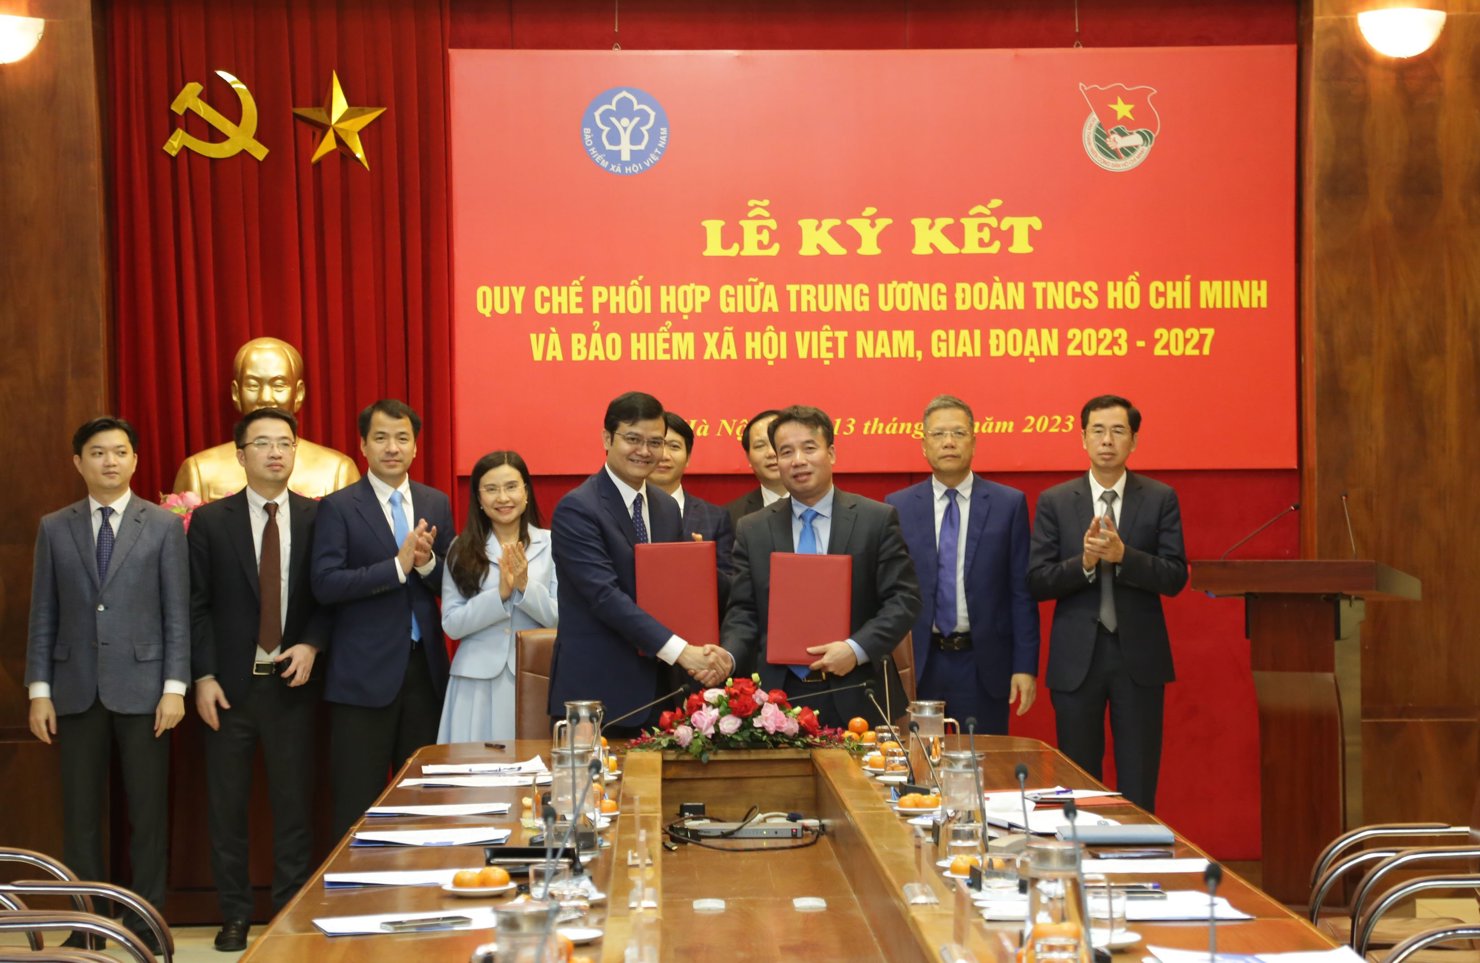 Quang cảnh lễ ký kết Quy chế phối hợp công tác giai đoạn 2023-2027 giữa BHXH Việt Nam và Trung ương Đoàn.